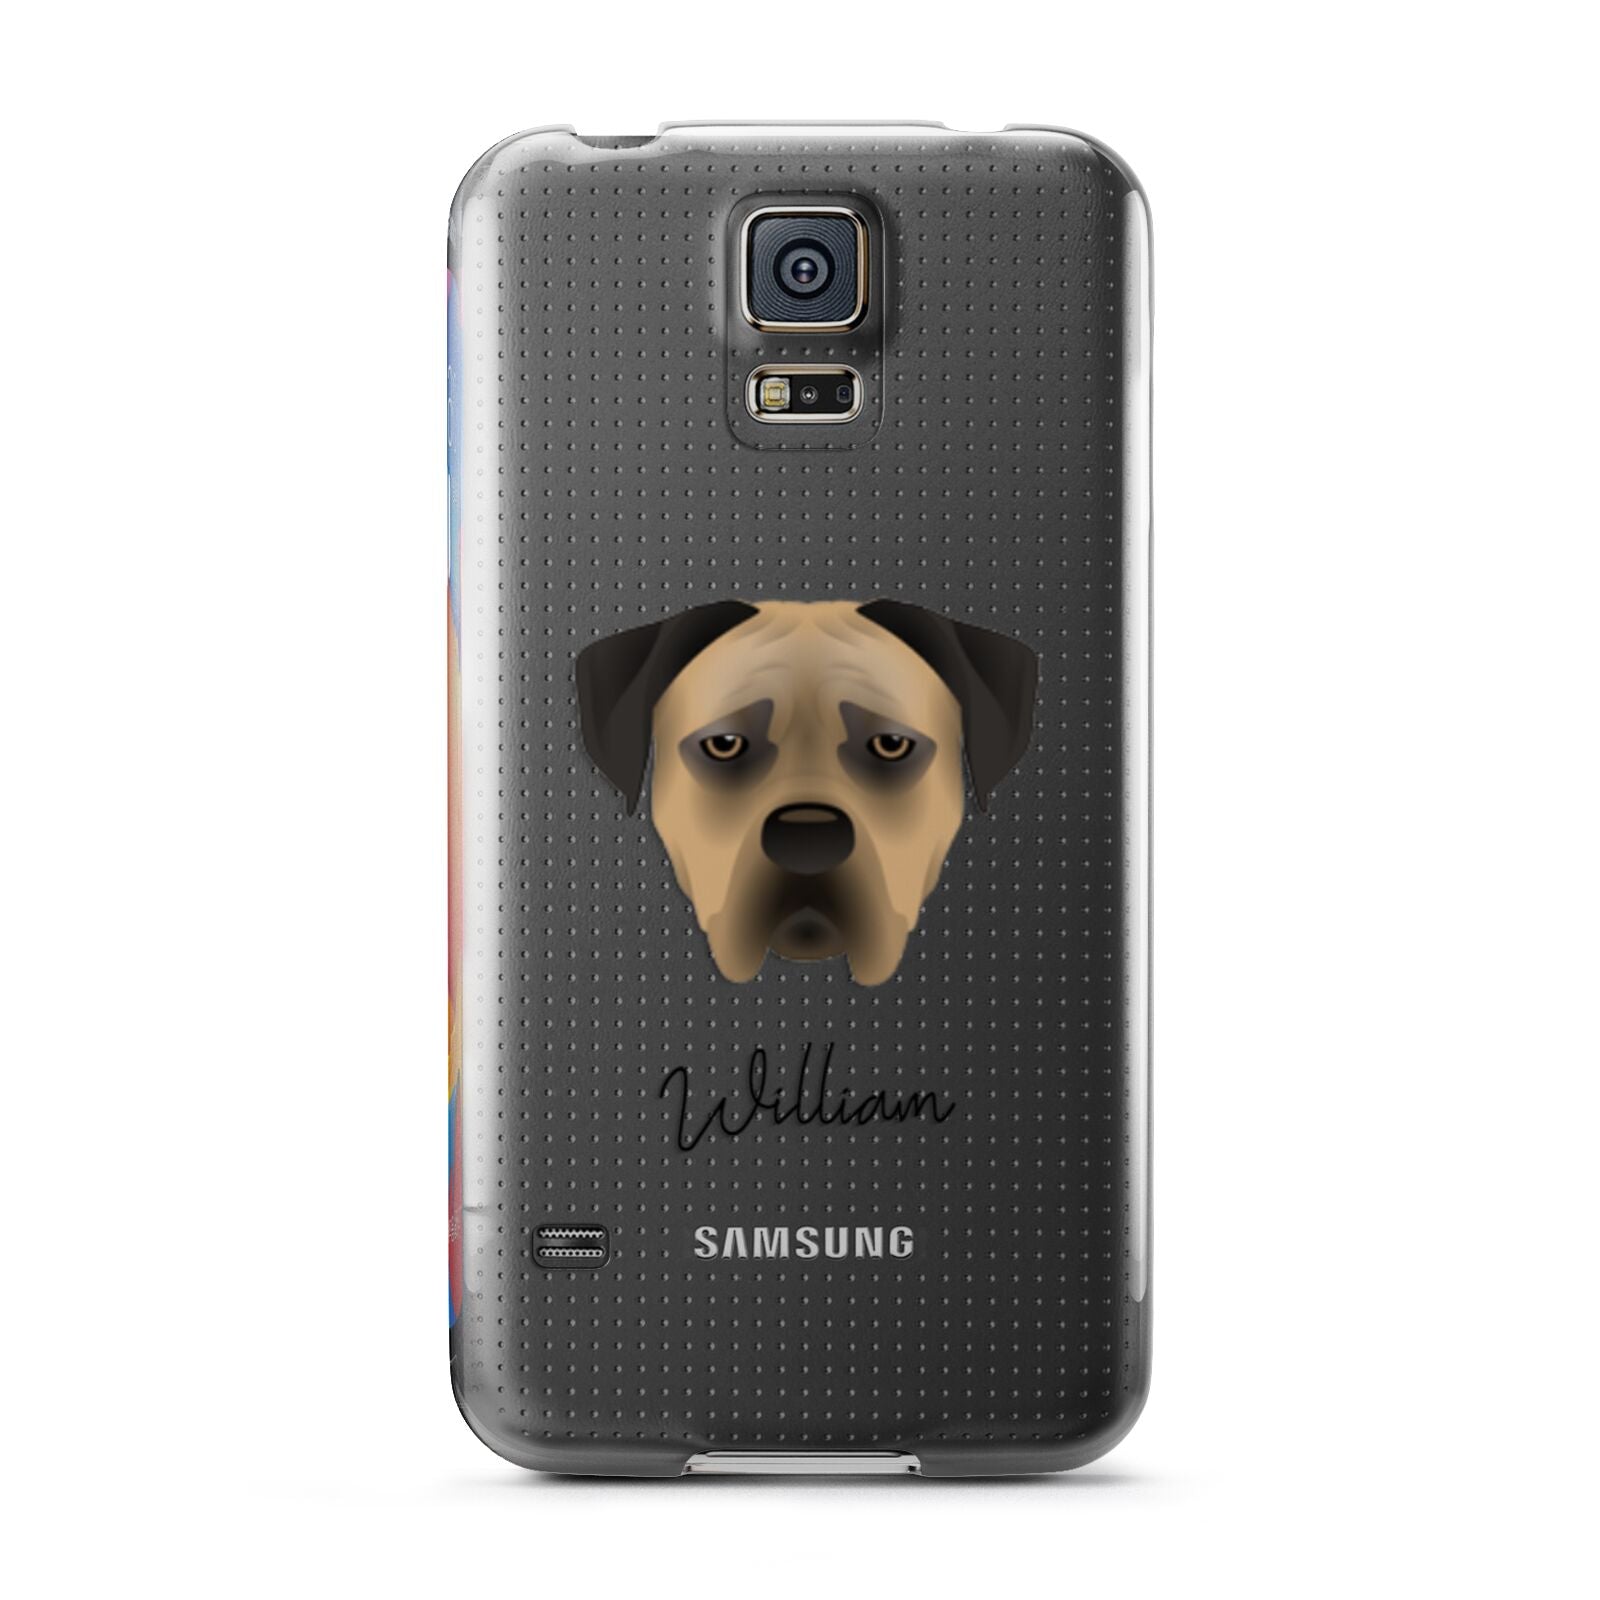 Boerboel Personalised Samsung Galaxy S5 Case